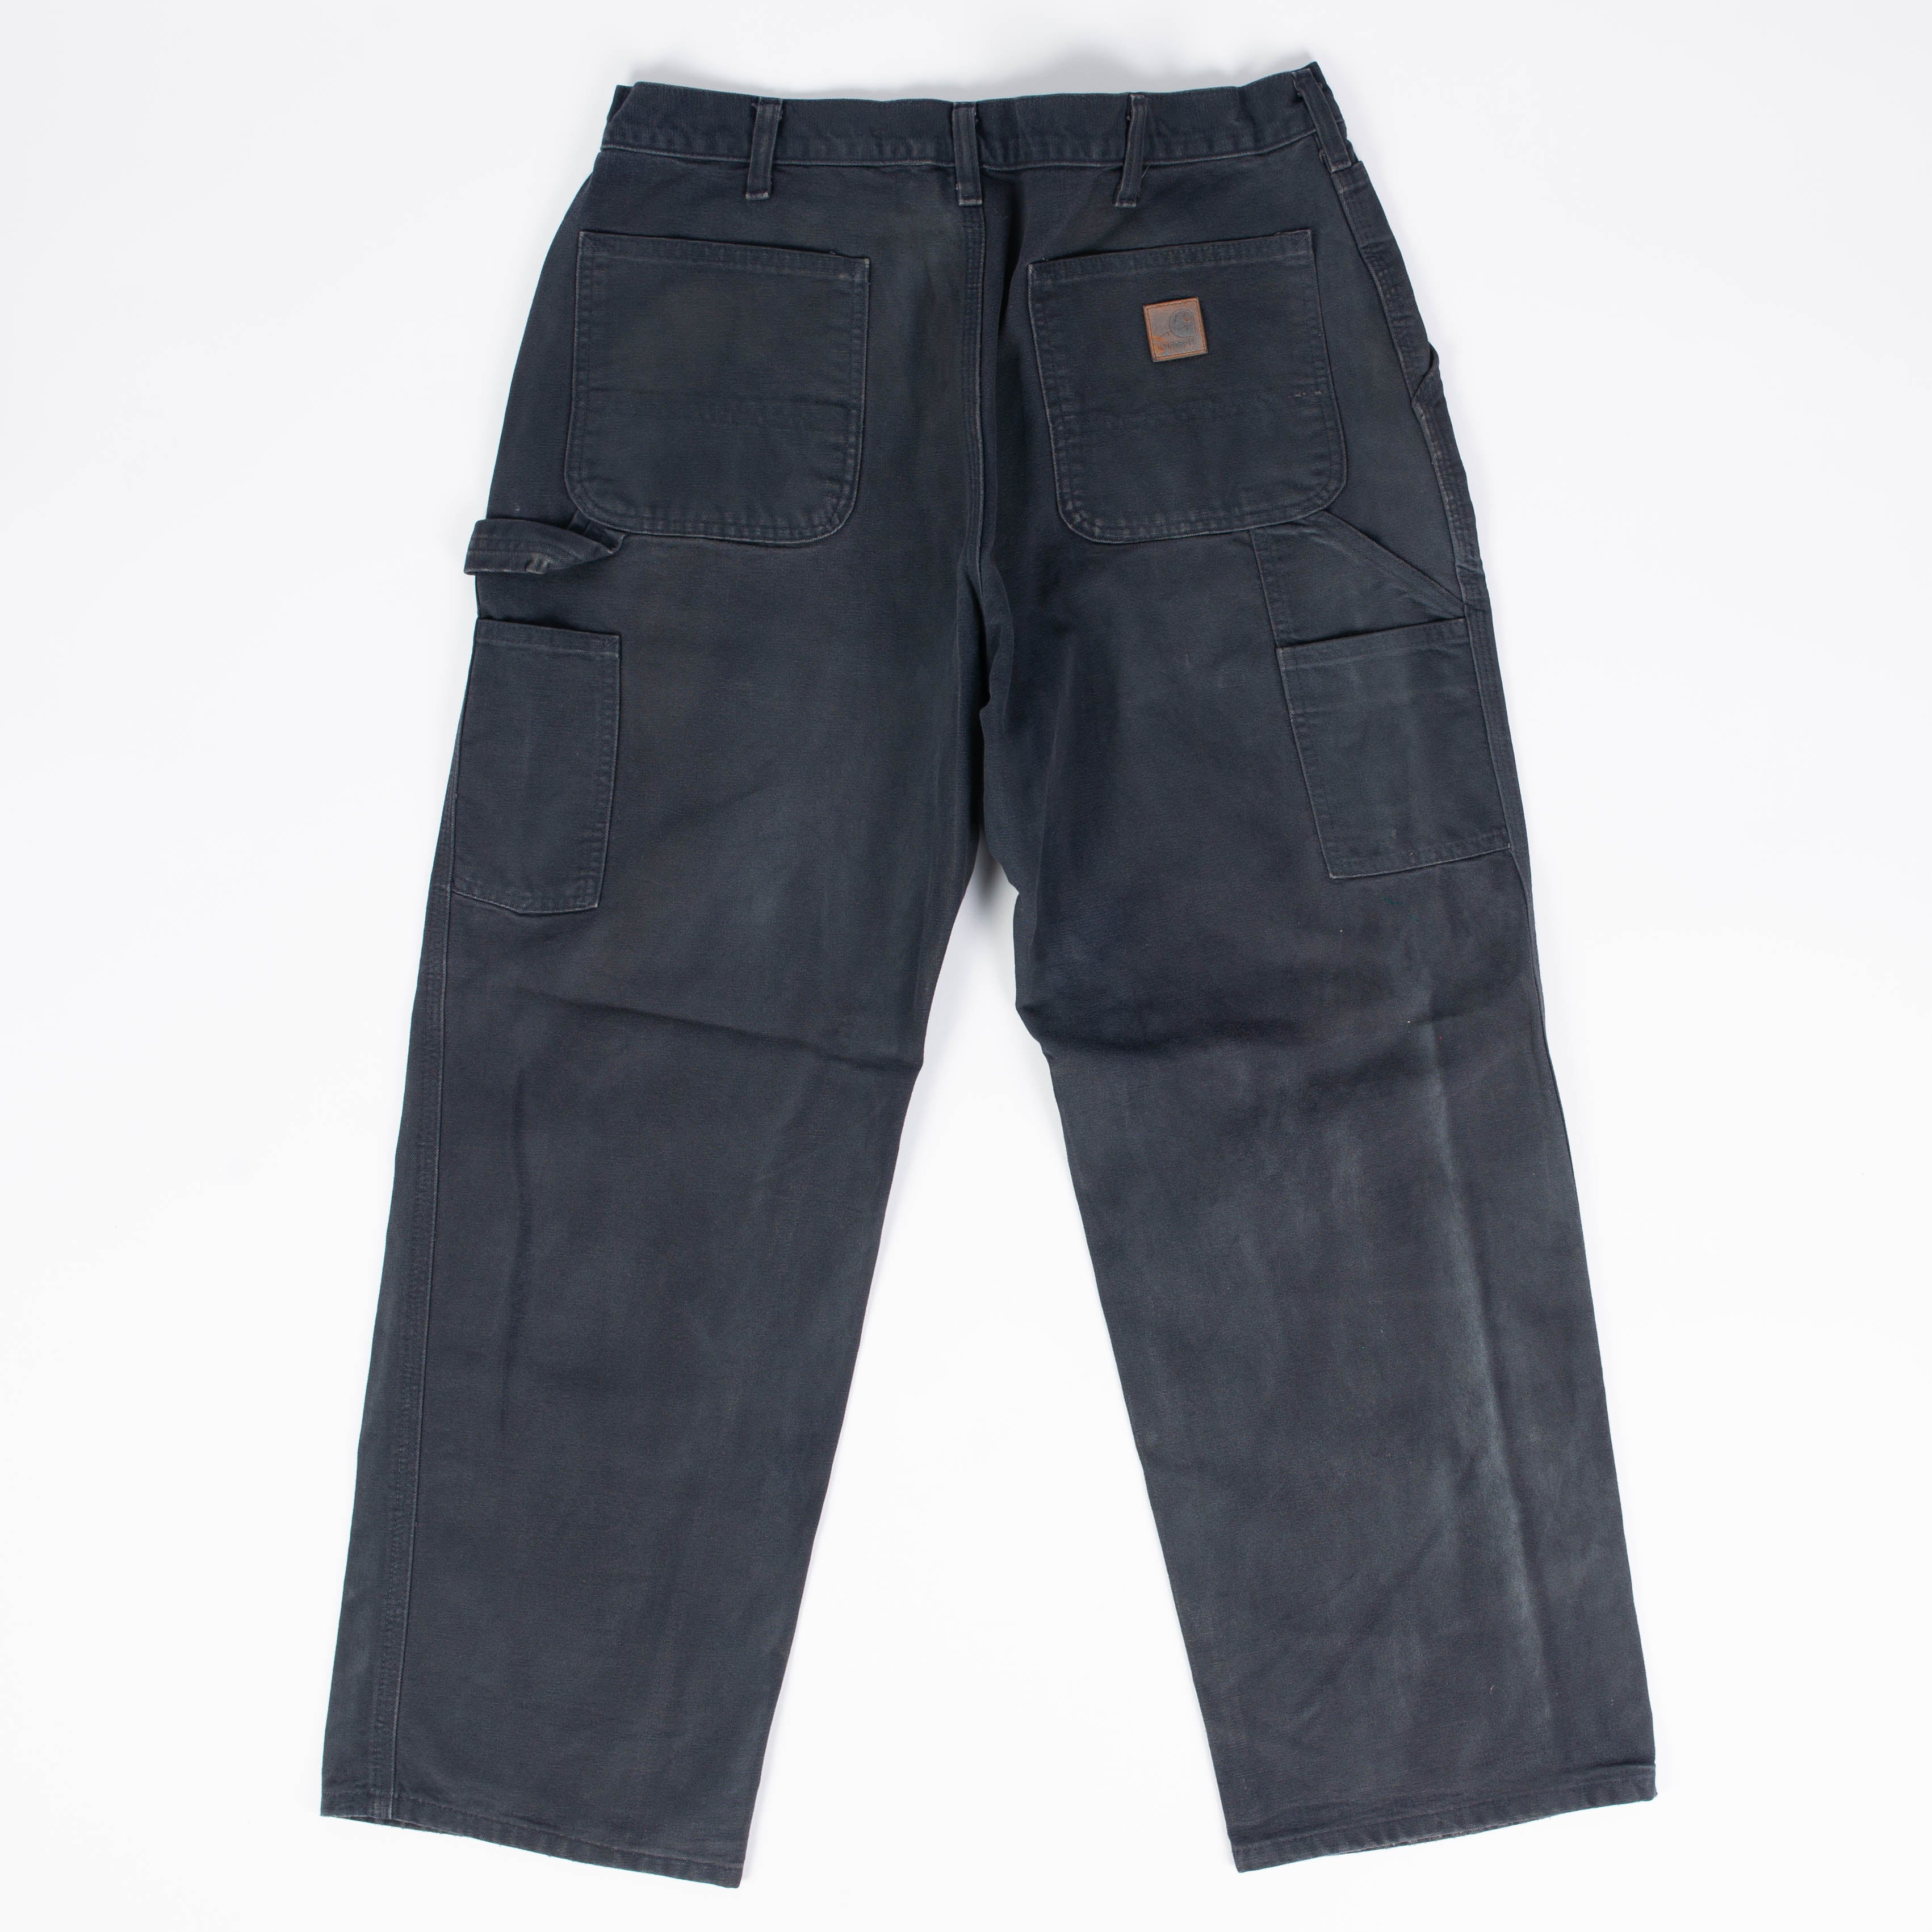 DCNSTRCTD Carhartt Jeans